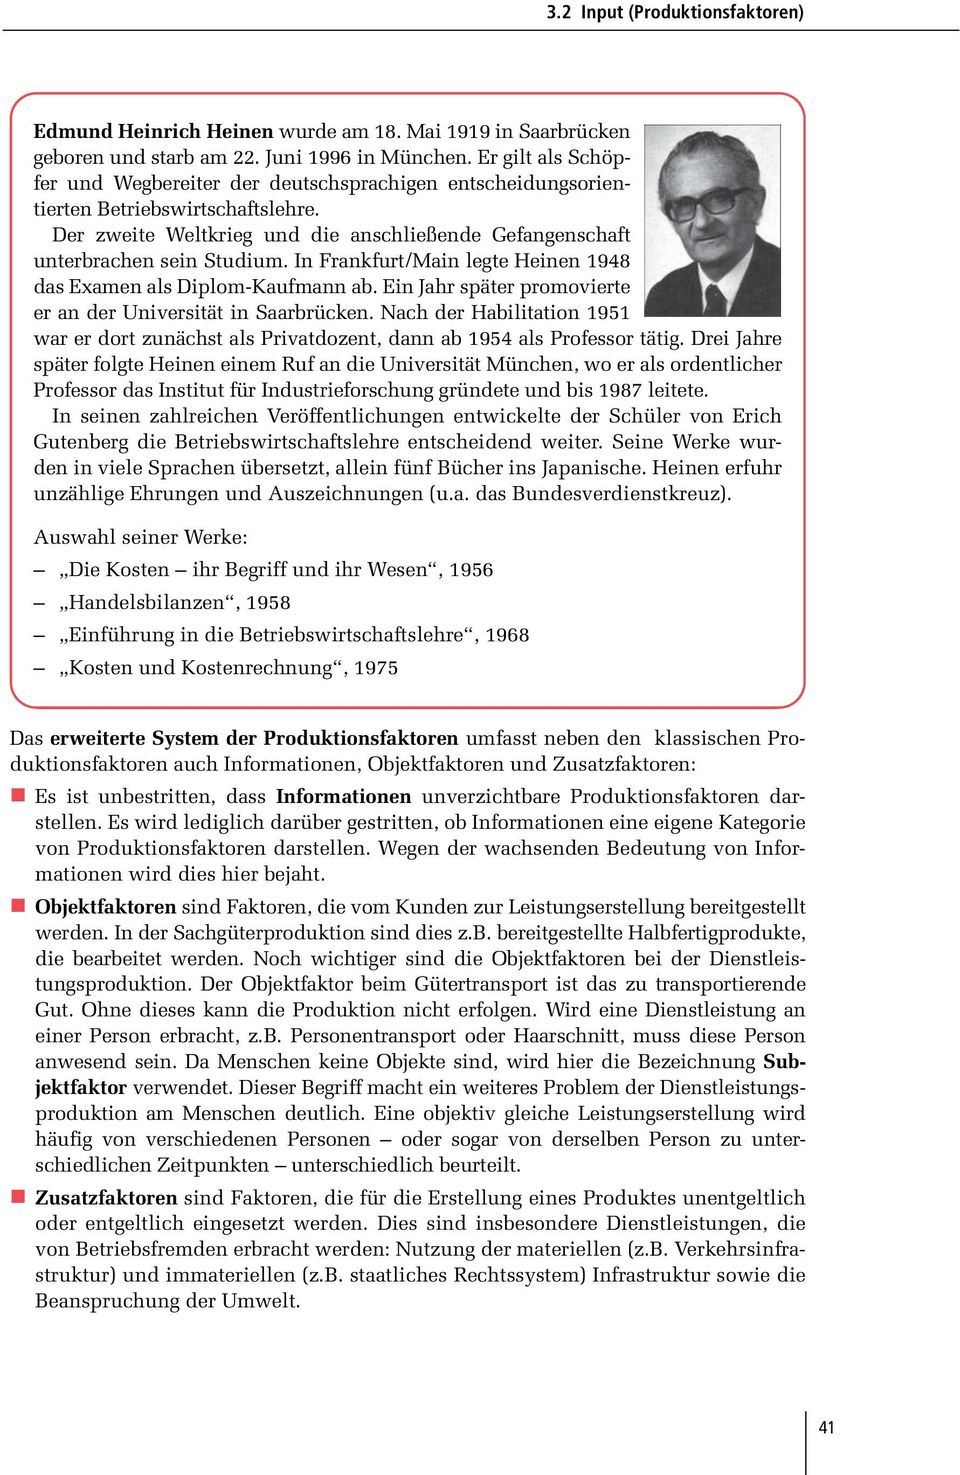 In Frankfurt/Main legte Heinen 1948 das Examen als Diplom-Kaufmann ab. Ein Jahr später promovierte er an der Universität in Saarbrücken.